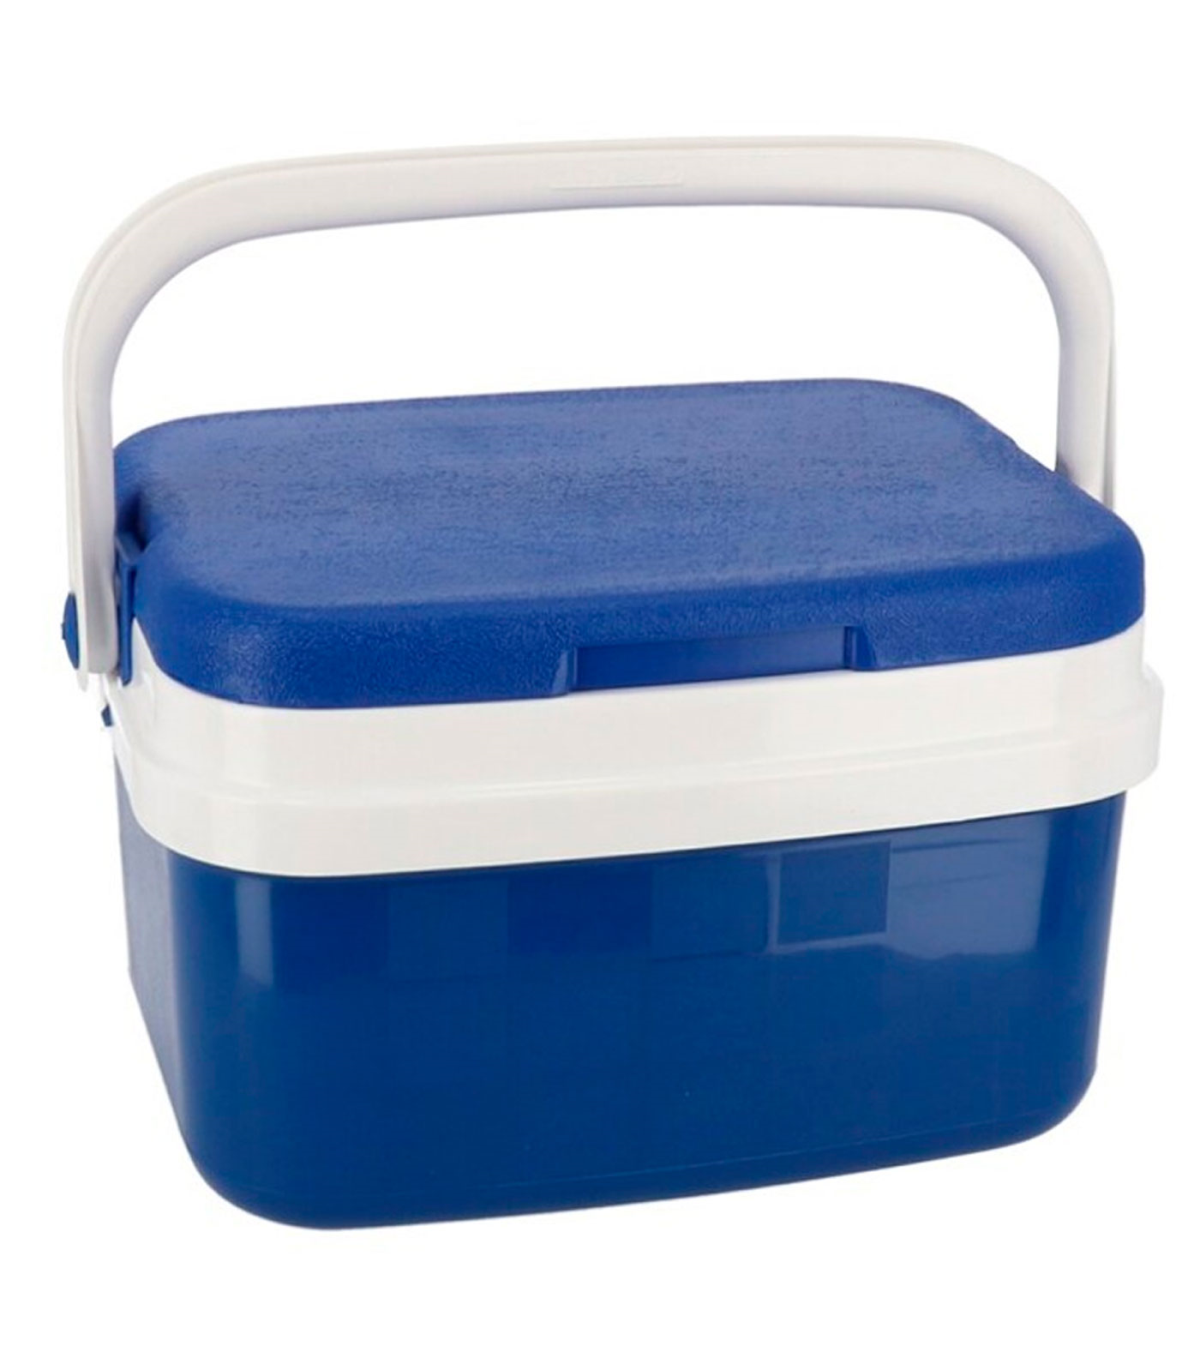 Nevera portátil con asa, polipropileno,porta alimentos para acampada, camping, 19 x 26 x 20 cm, color azul y bl